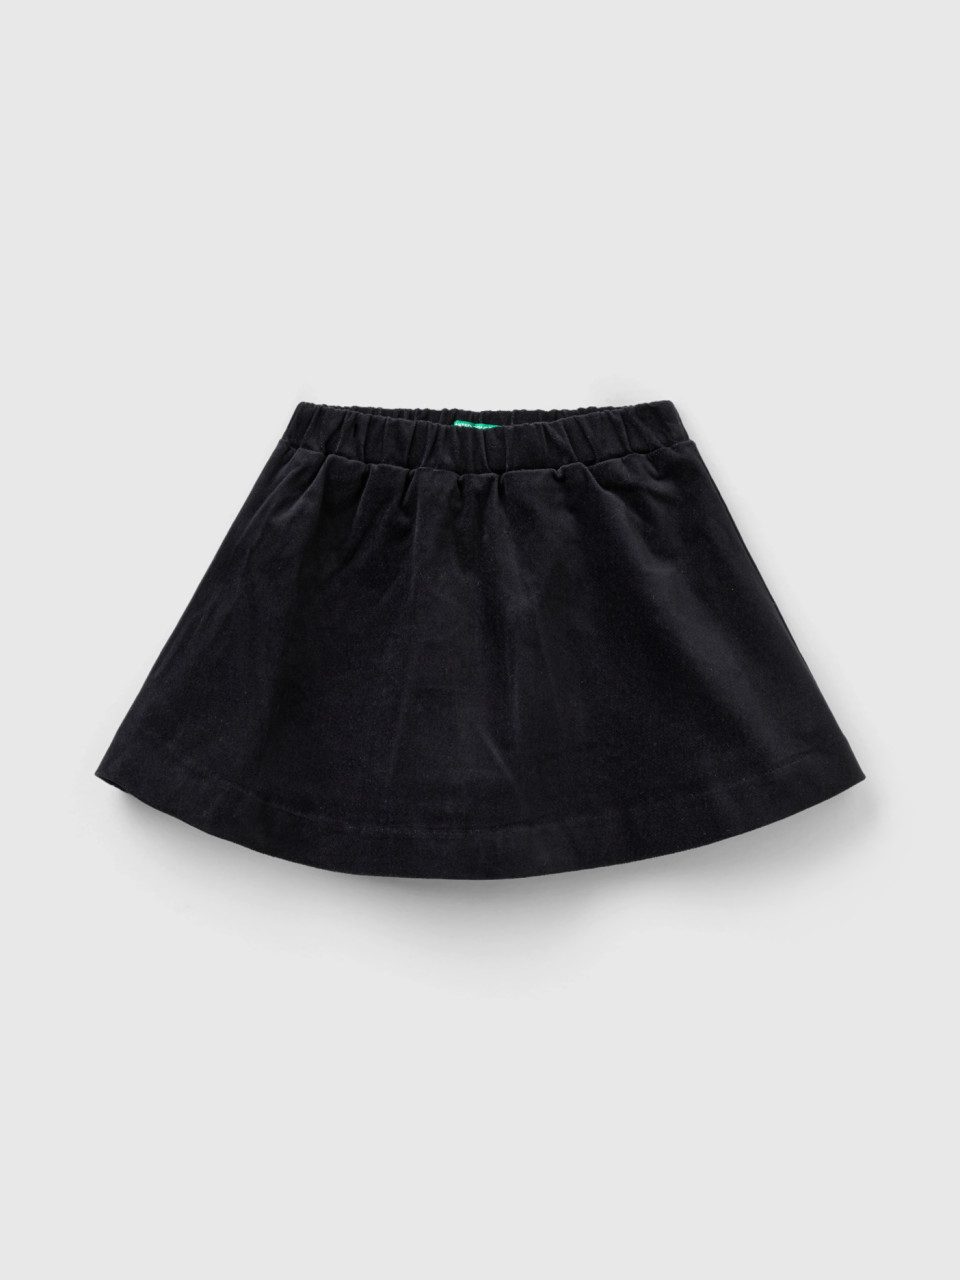 Benetton, Smooth Velvet Mini Skirt, Black, Kids